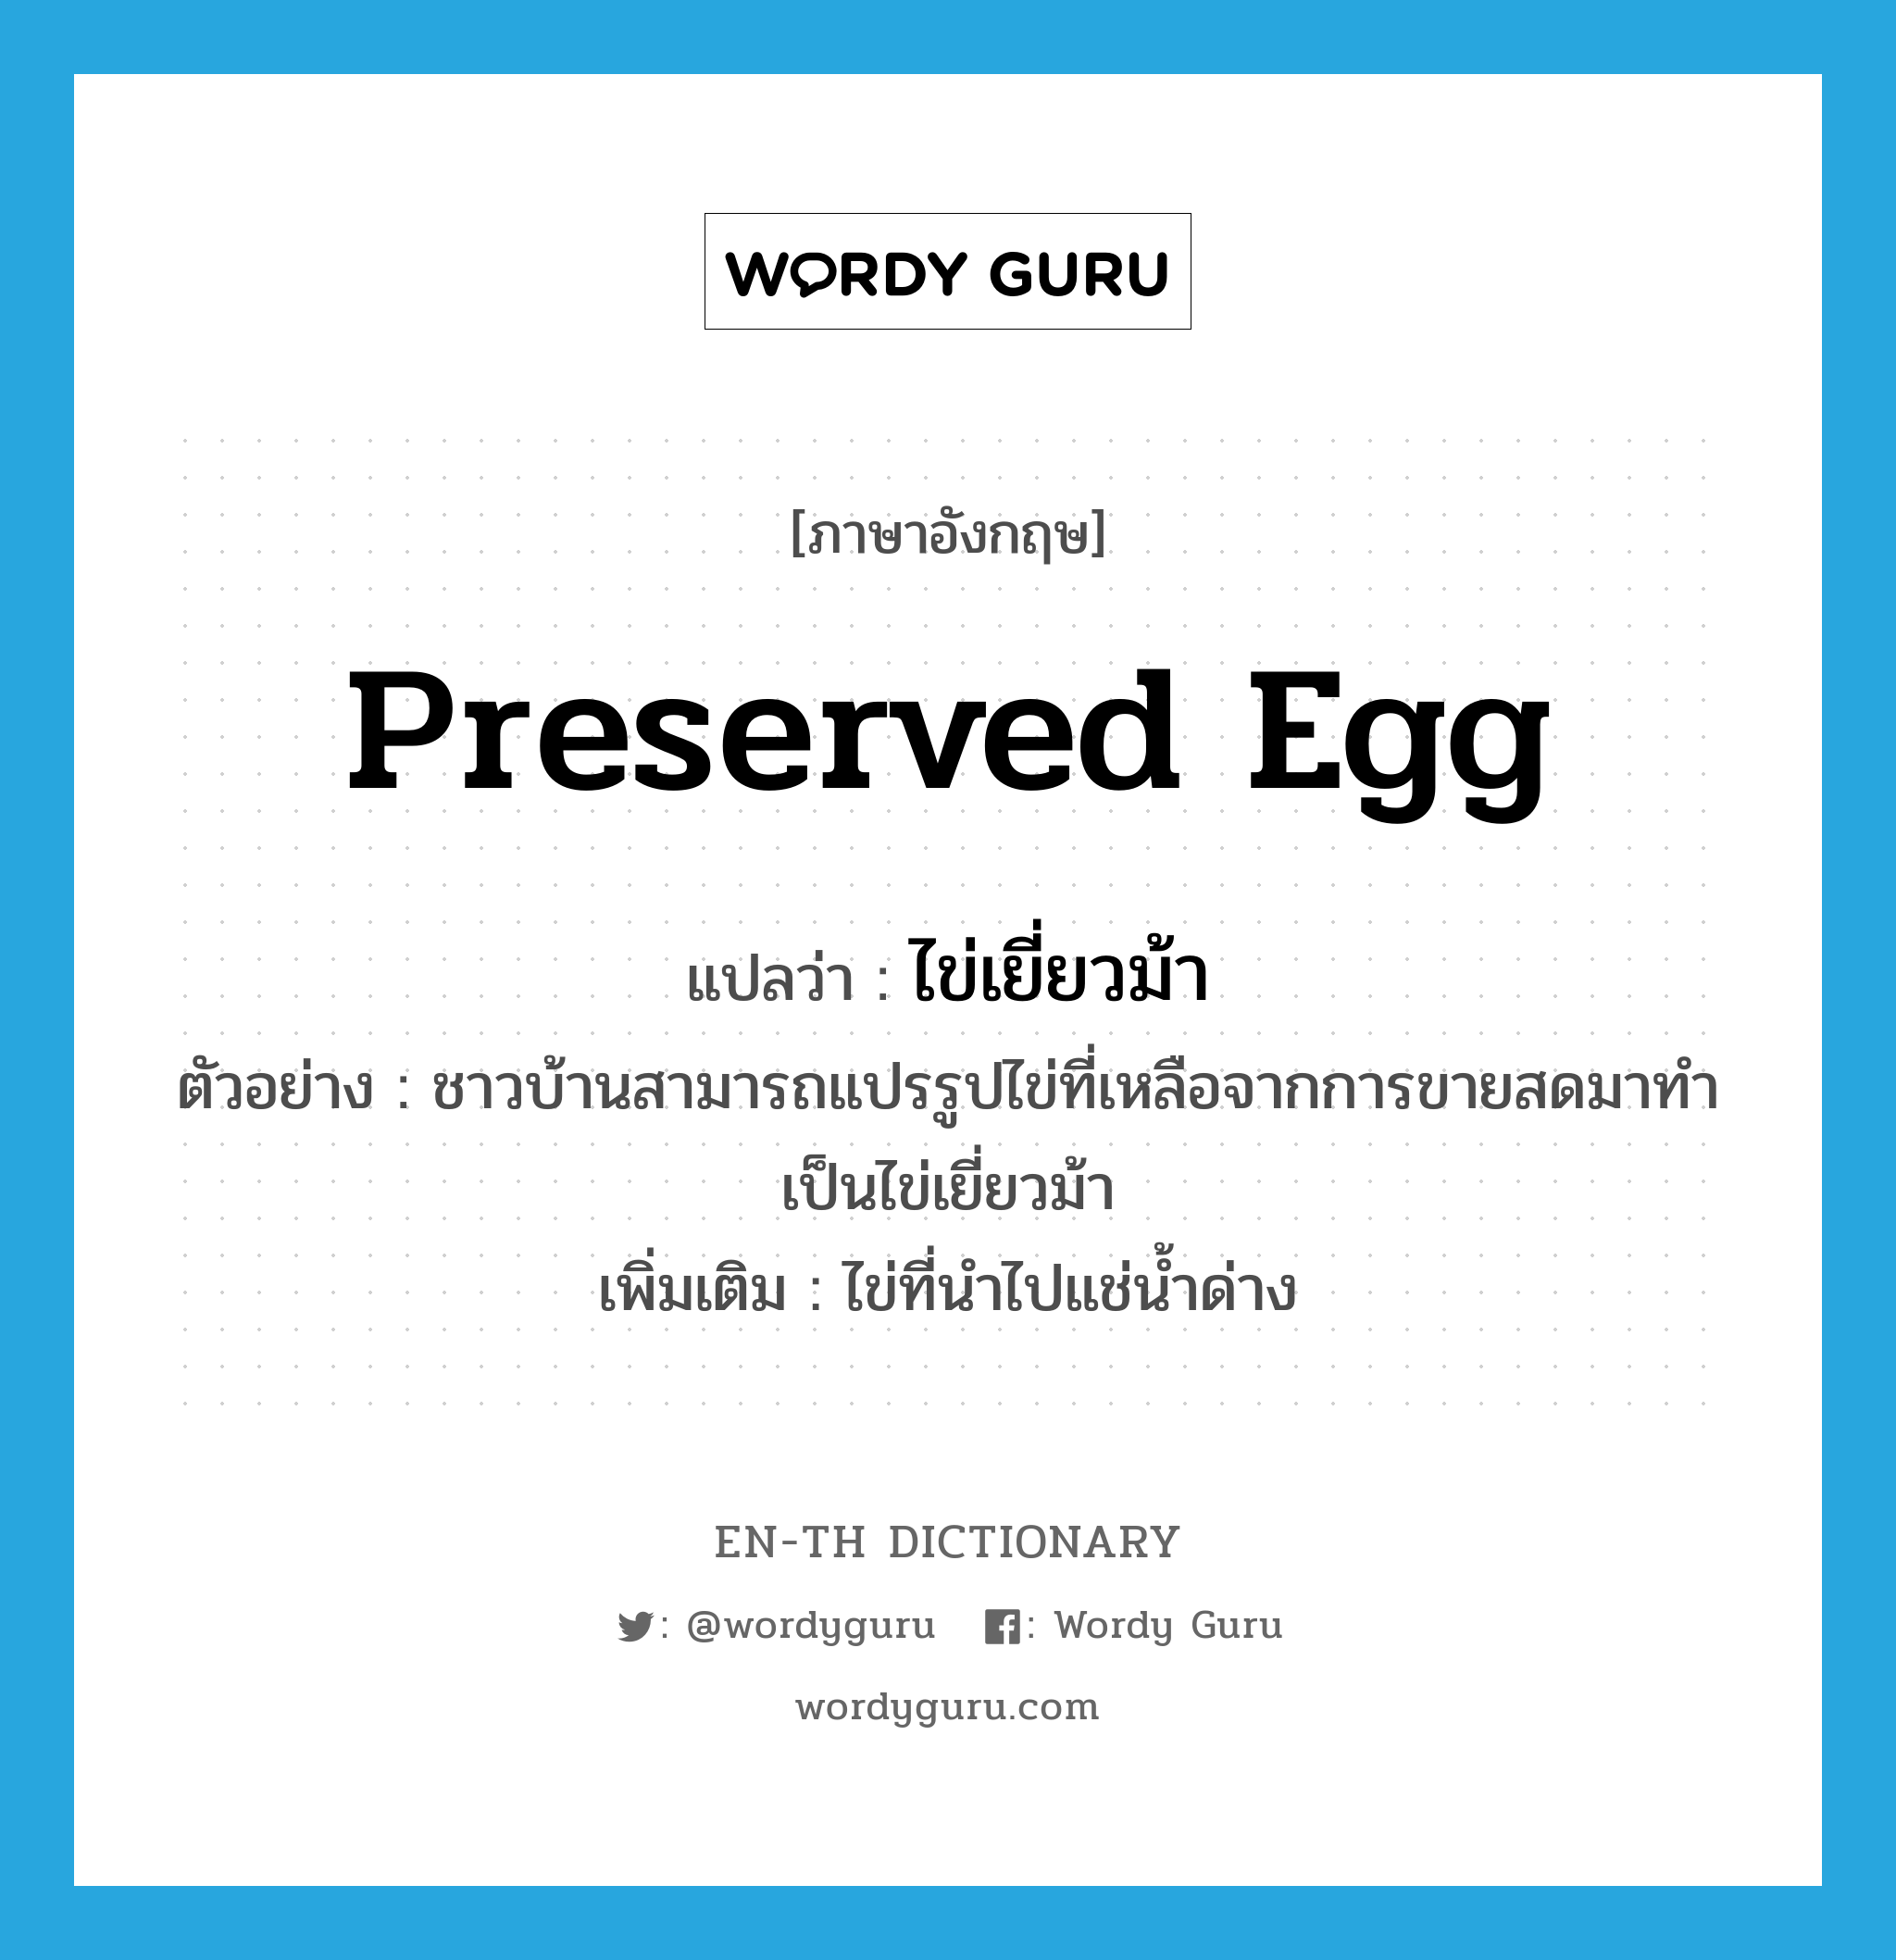 preserved egg แปลว่า?, คำศัพท์ภาษาอังกฤษ preserved egg แปลว่า ไข่เยี่ยวม้า ประเภท N ตัวอย่าง ชาวบ้านสามารถแปรรูปไข่ที่เหลือจากการขายสดมาทำเป็นไข่เยี่ยวม้า เพิ่มเติม ไข่ที่นำไปแช่น้ำด่าง หมวด N